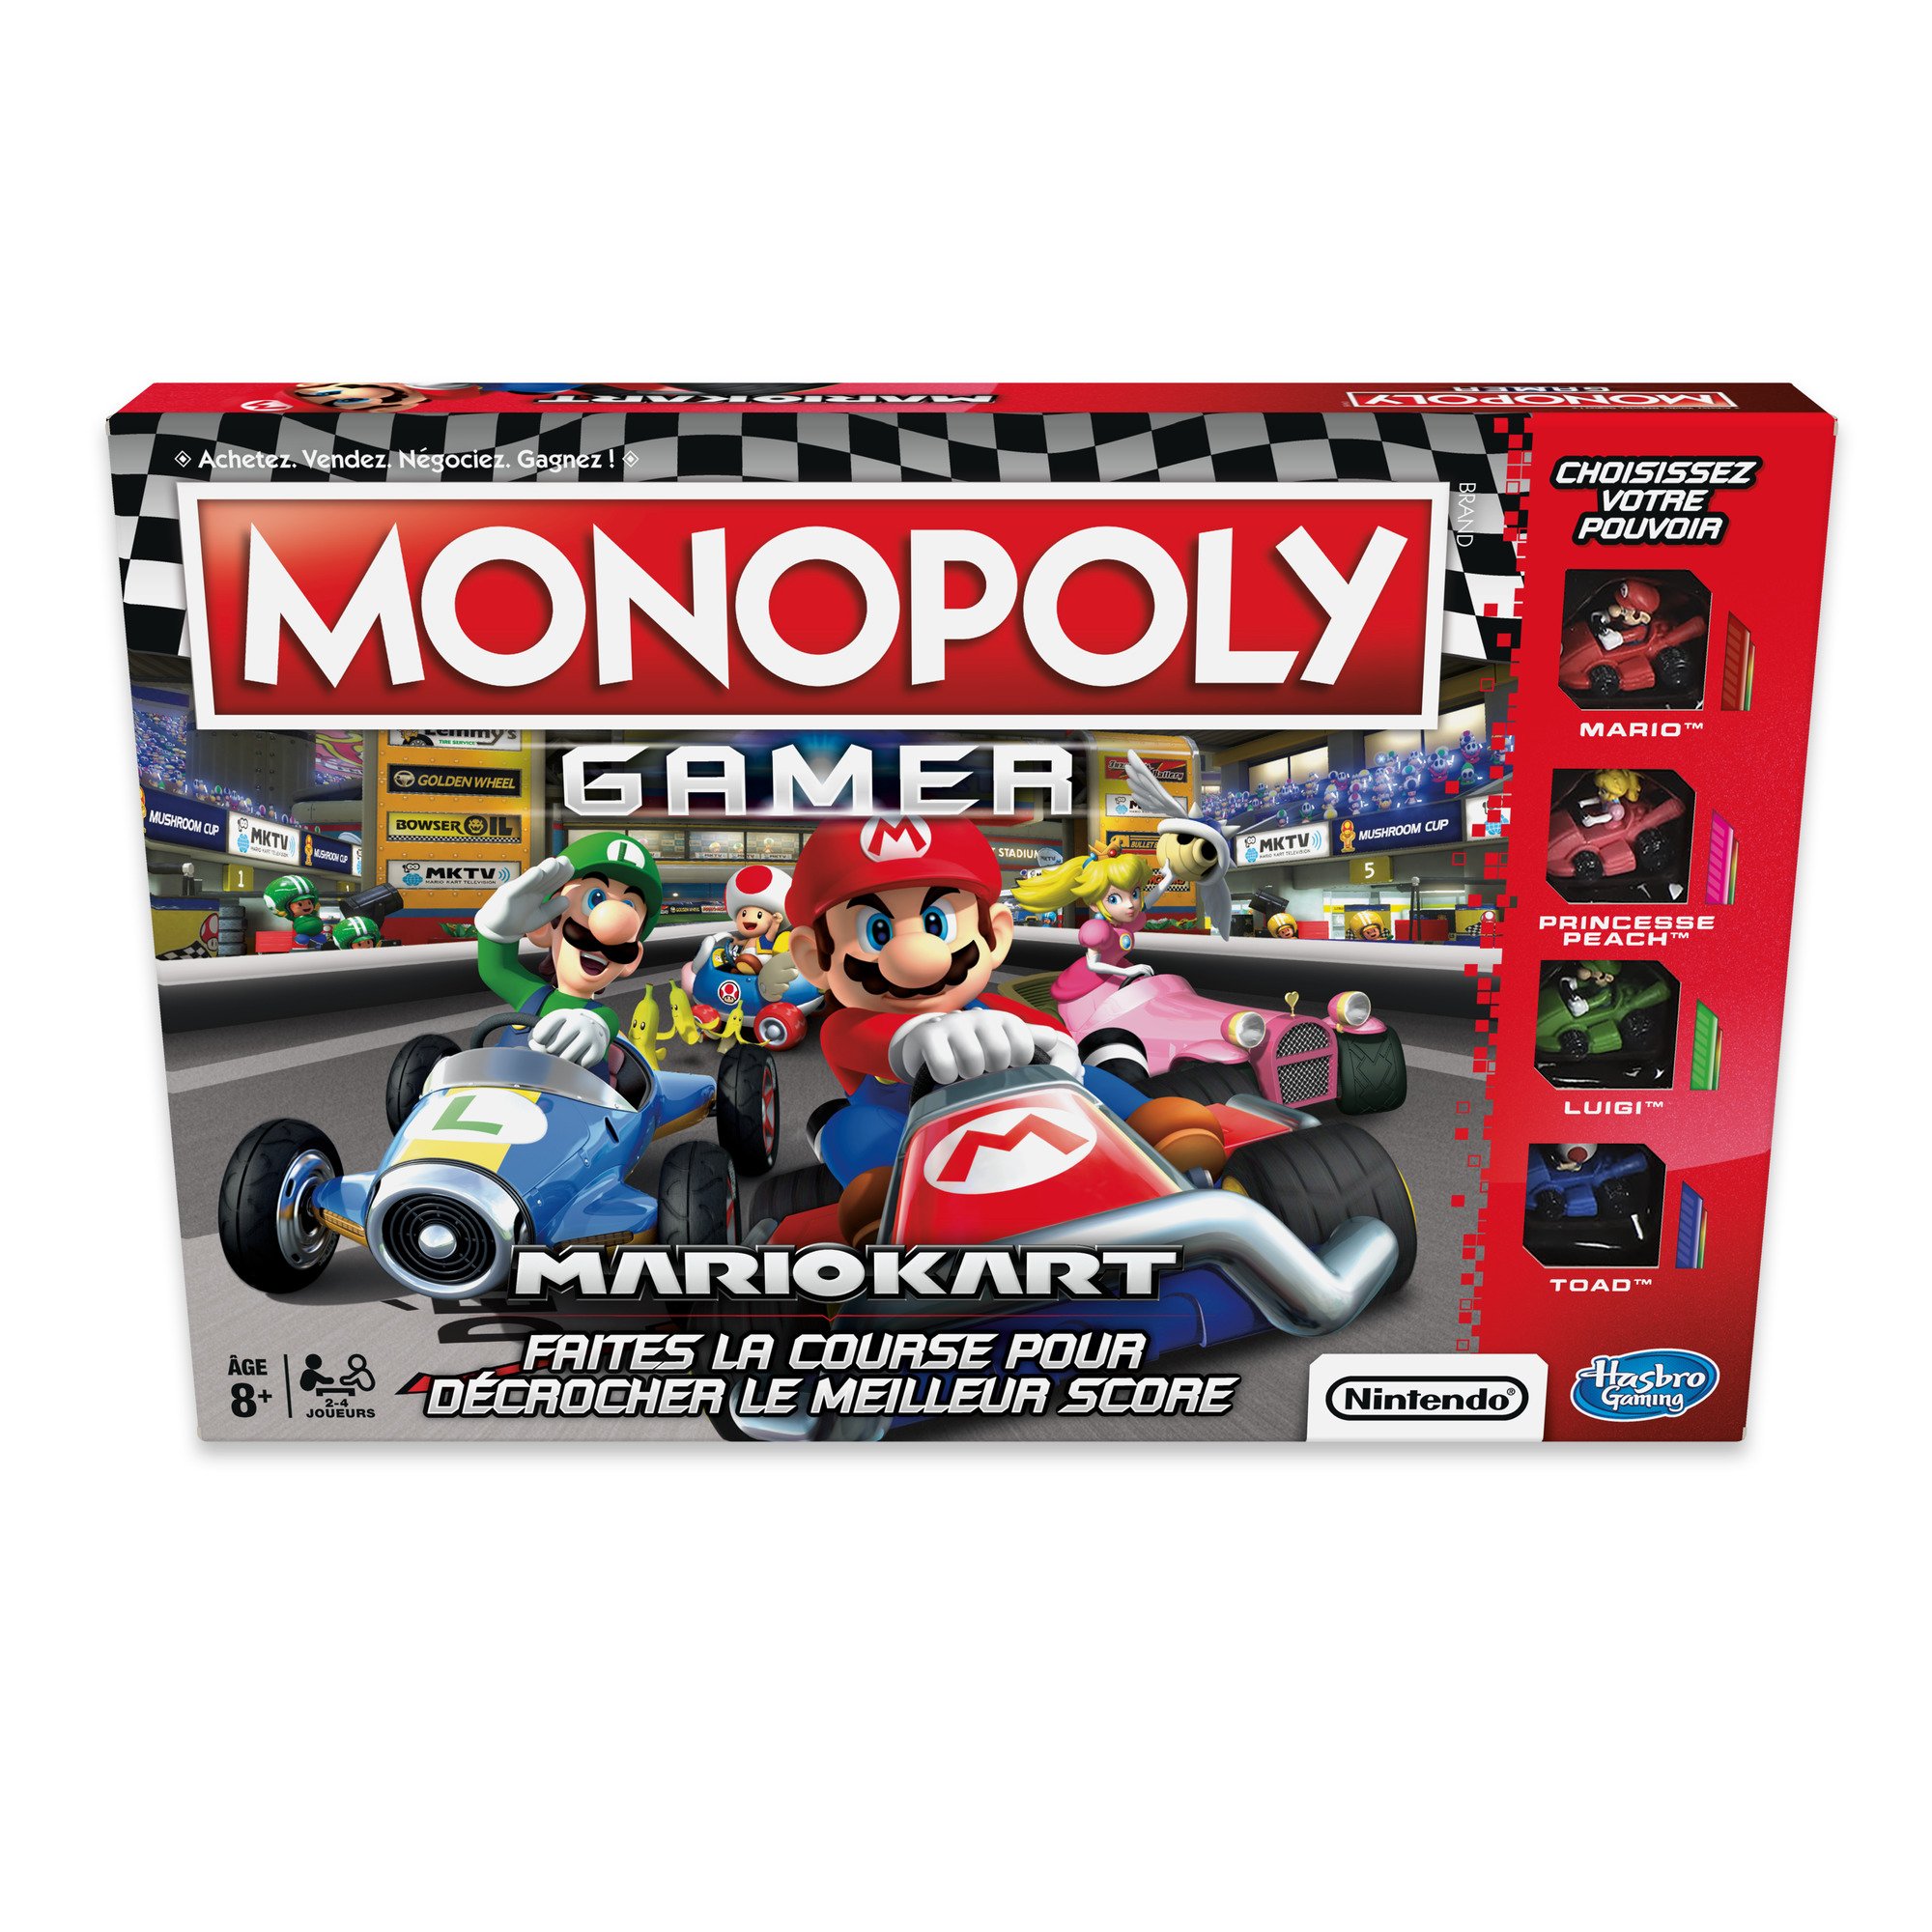 Monopoly – Gesellschaftsspiel Gamer Mario Kart – französische Version